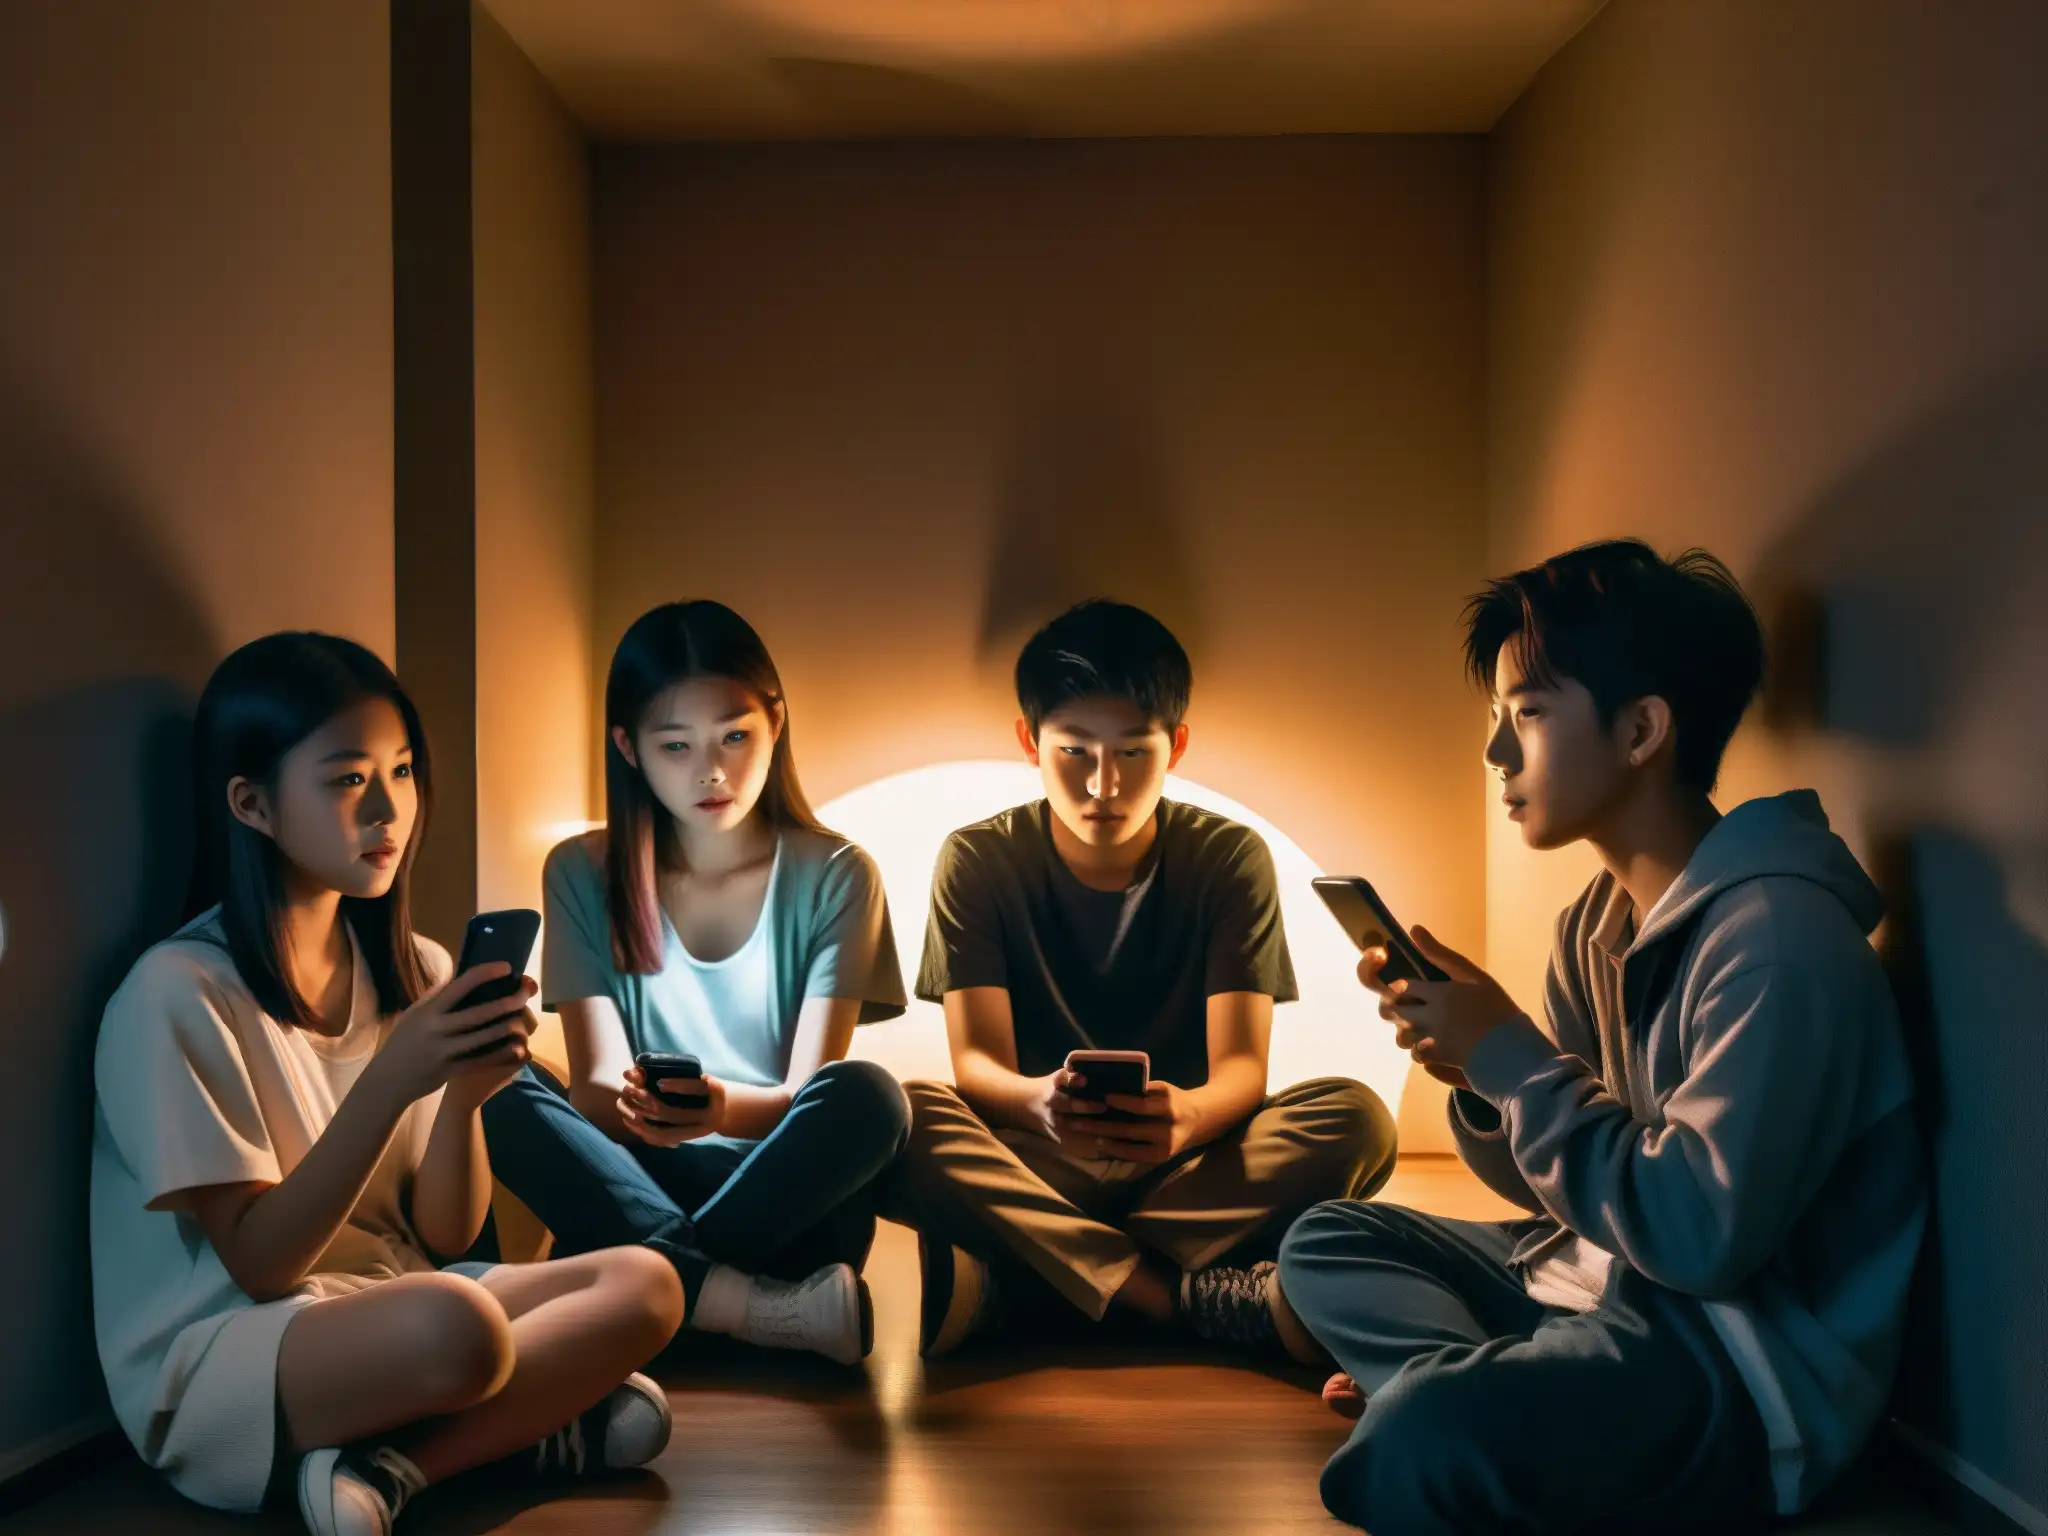 Grupo de adolescentes reviviendo leyendas urbanas japonesas con smartphones en una habitación tenue, creando una atmósfera inmersiva y perturbadora